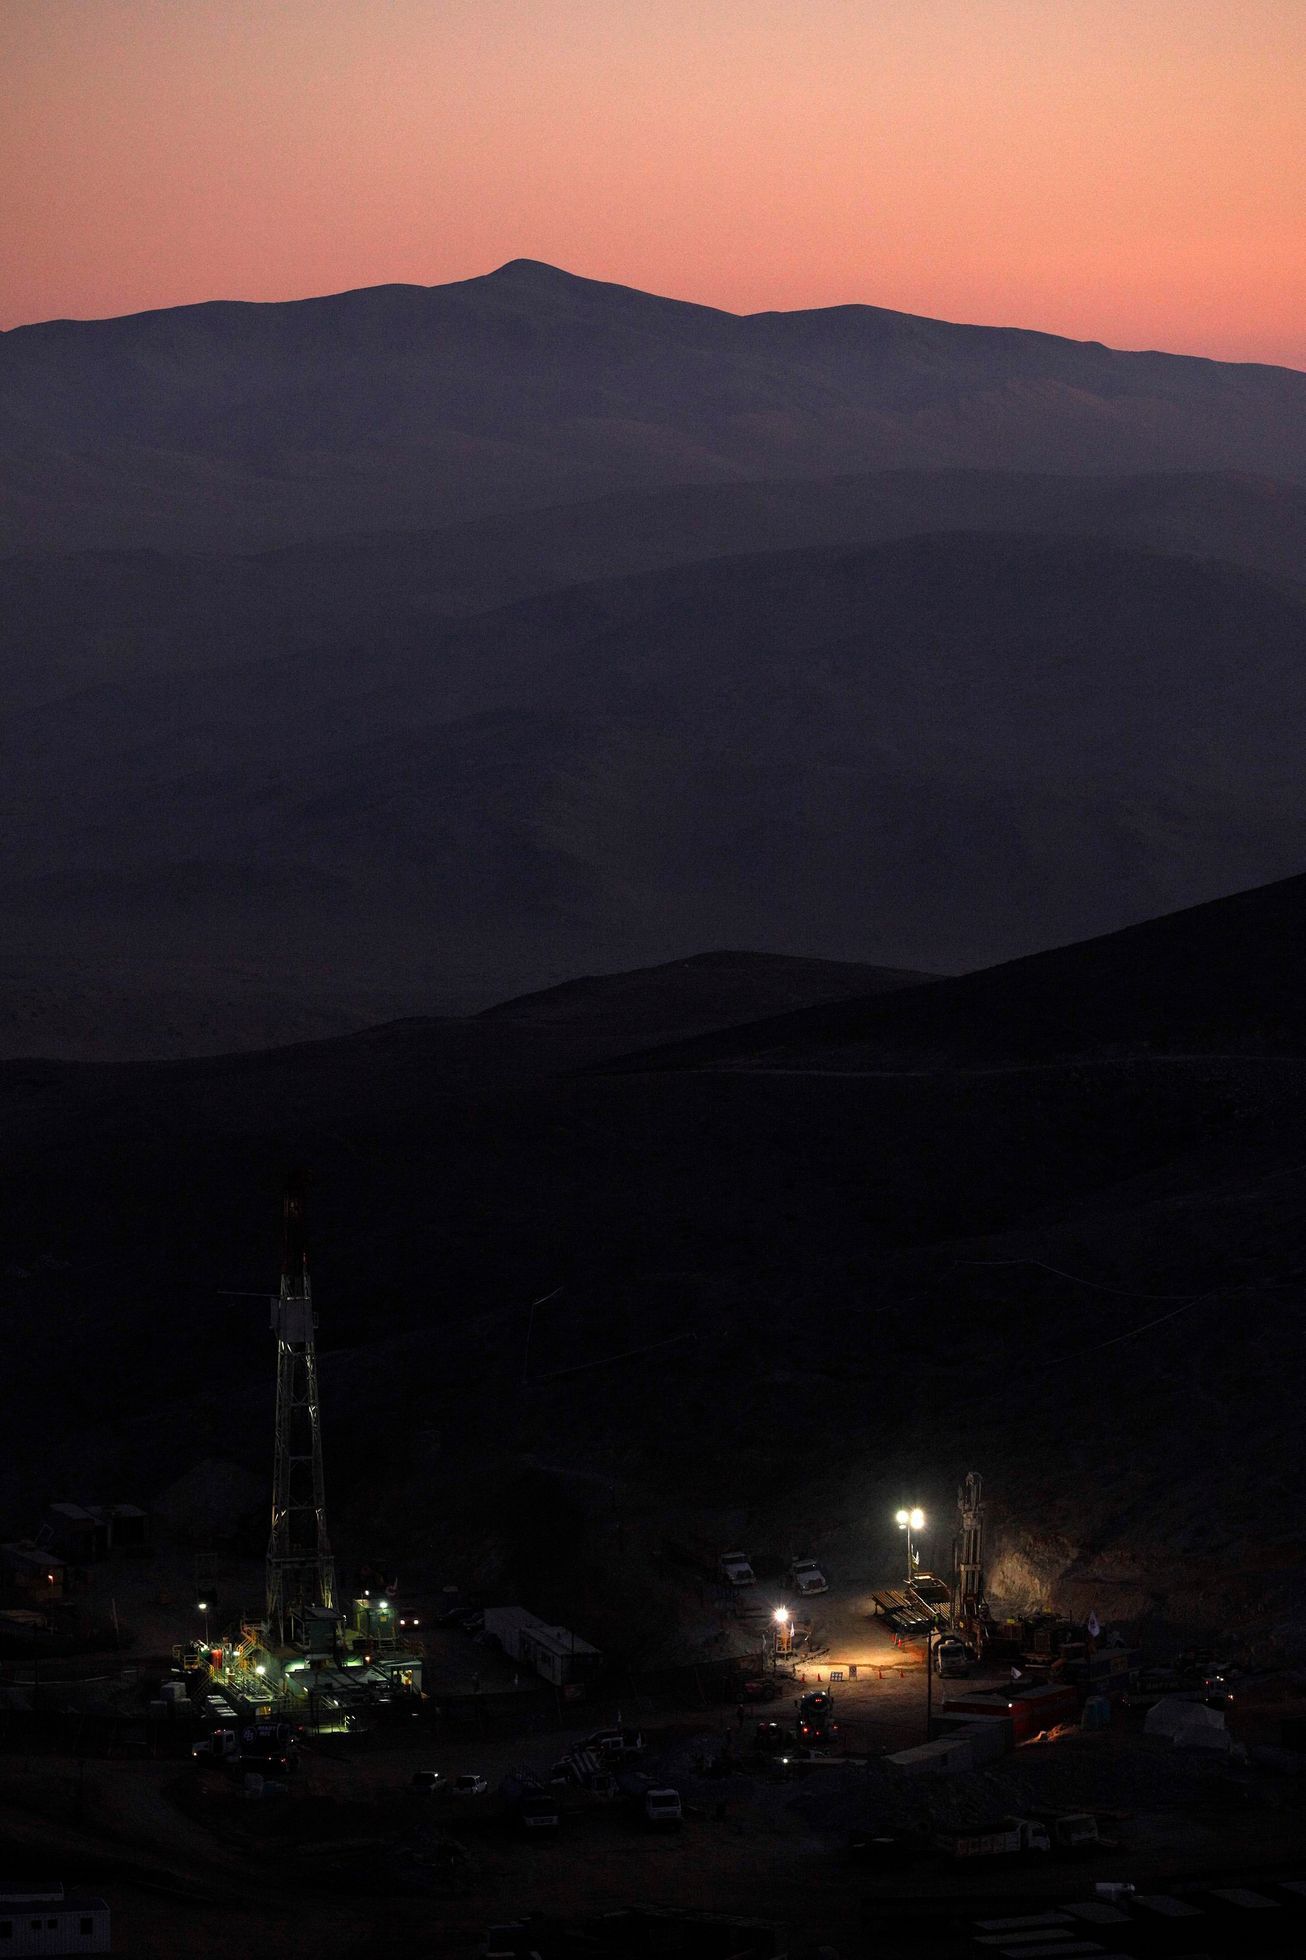 Záchrana horníků v Chile: přepravní kapsle